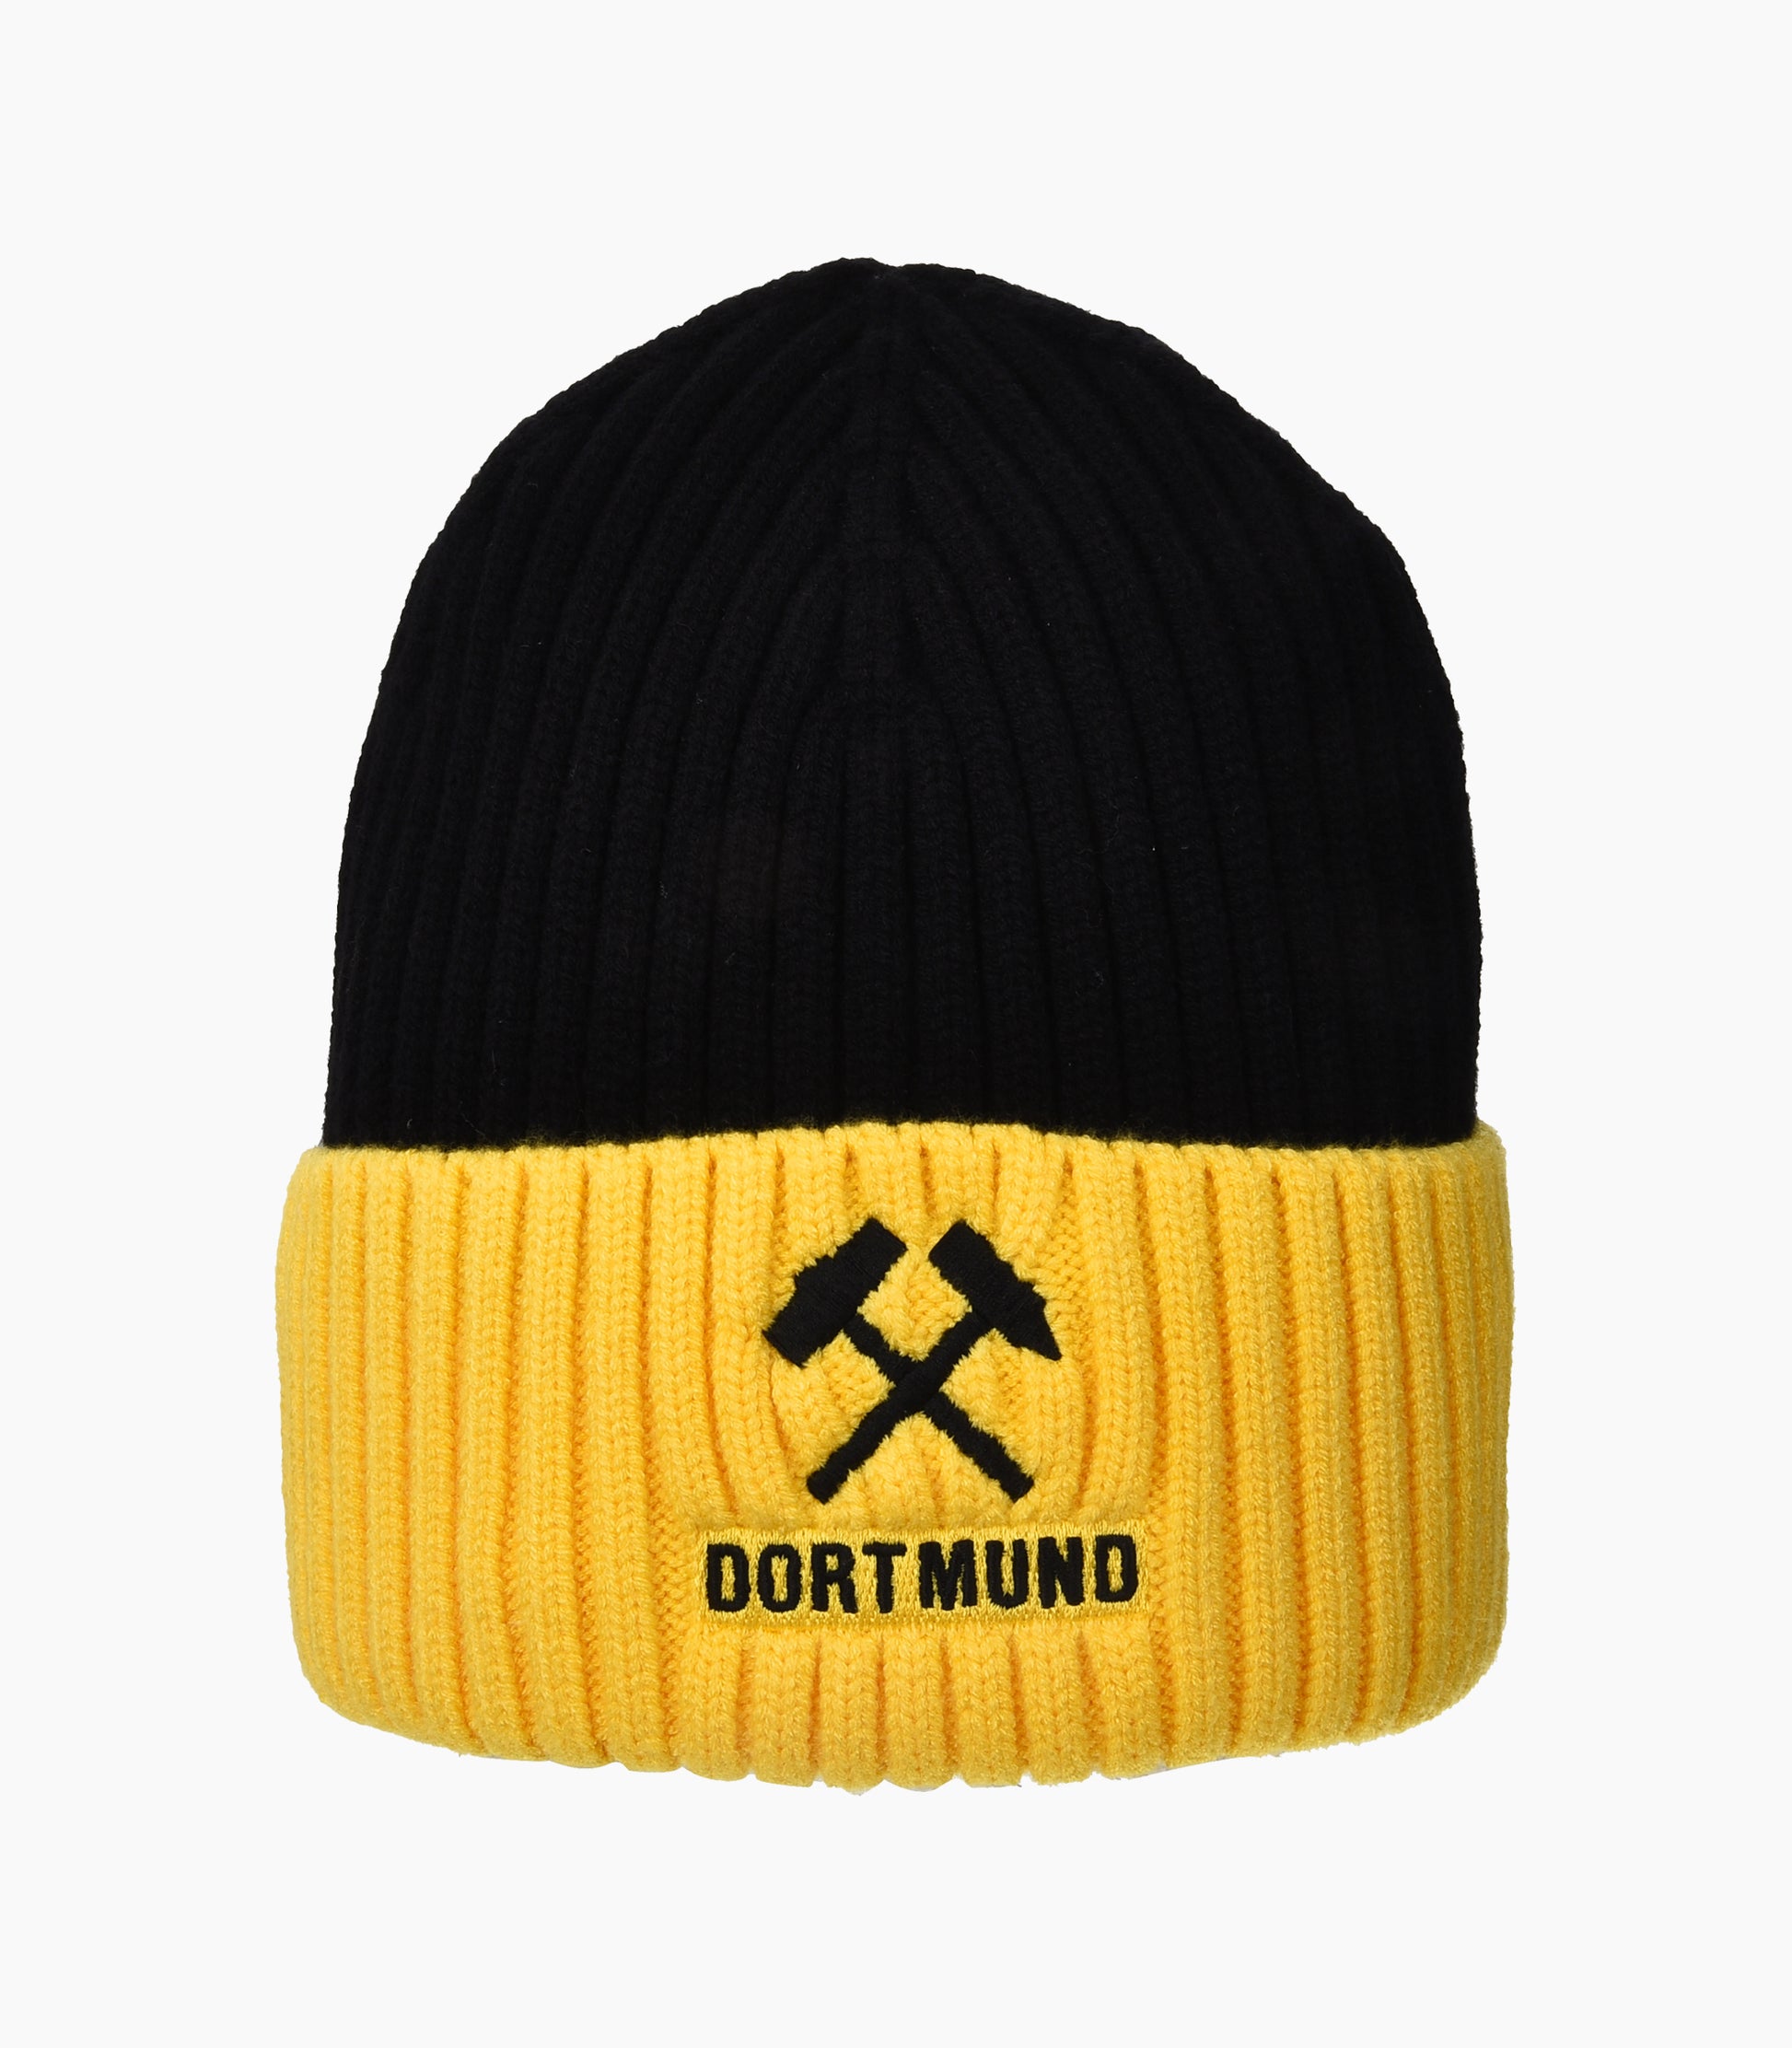 Dortmund Beanie Winter Hat - Robin Ruth